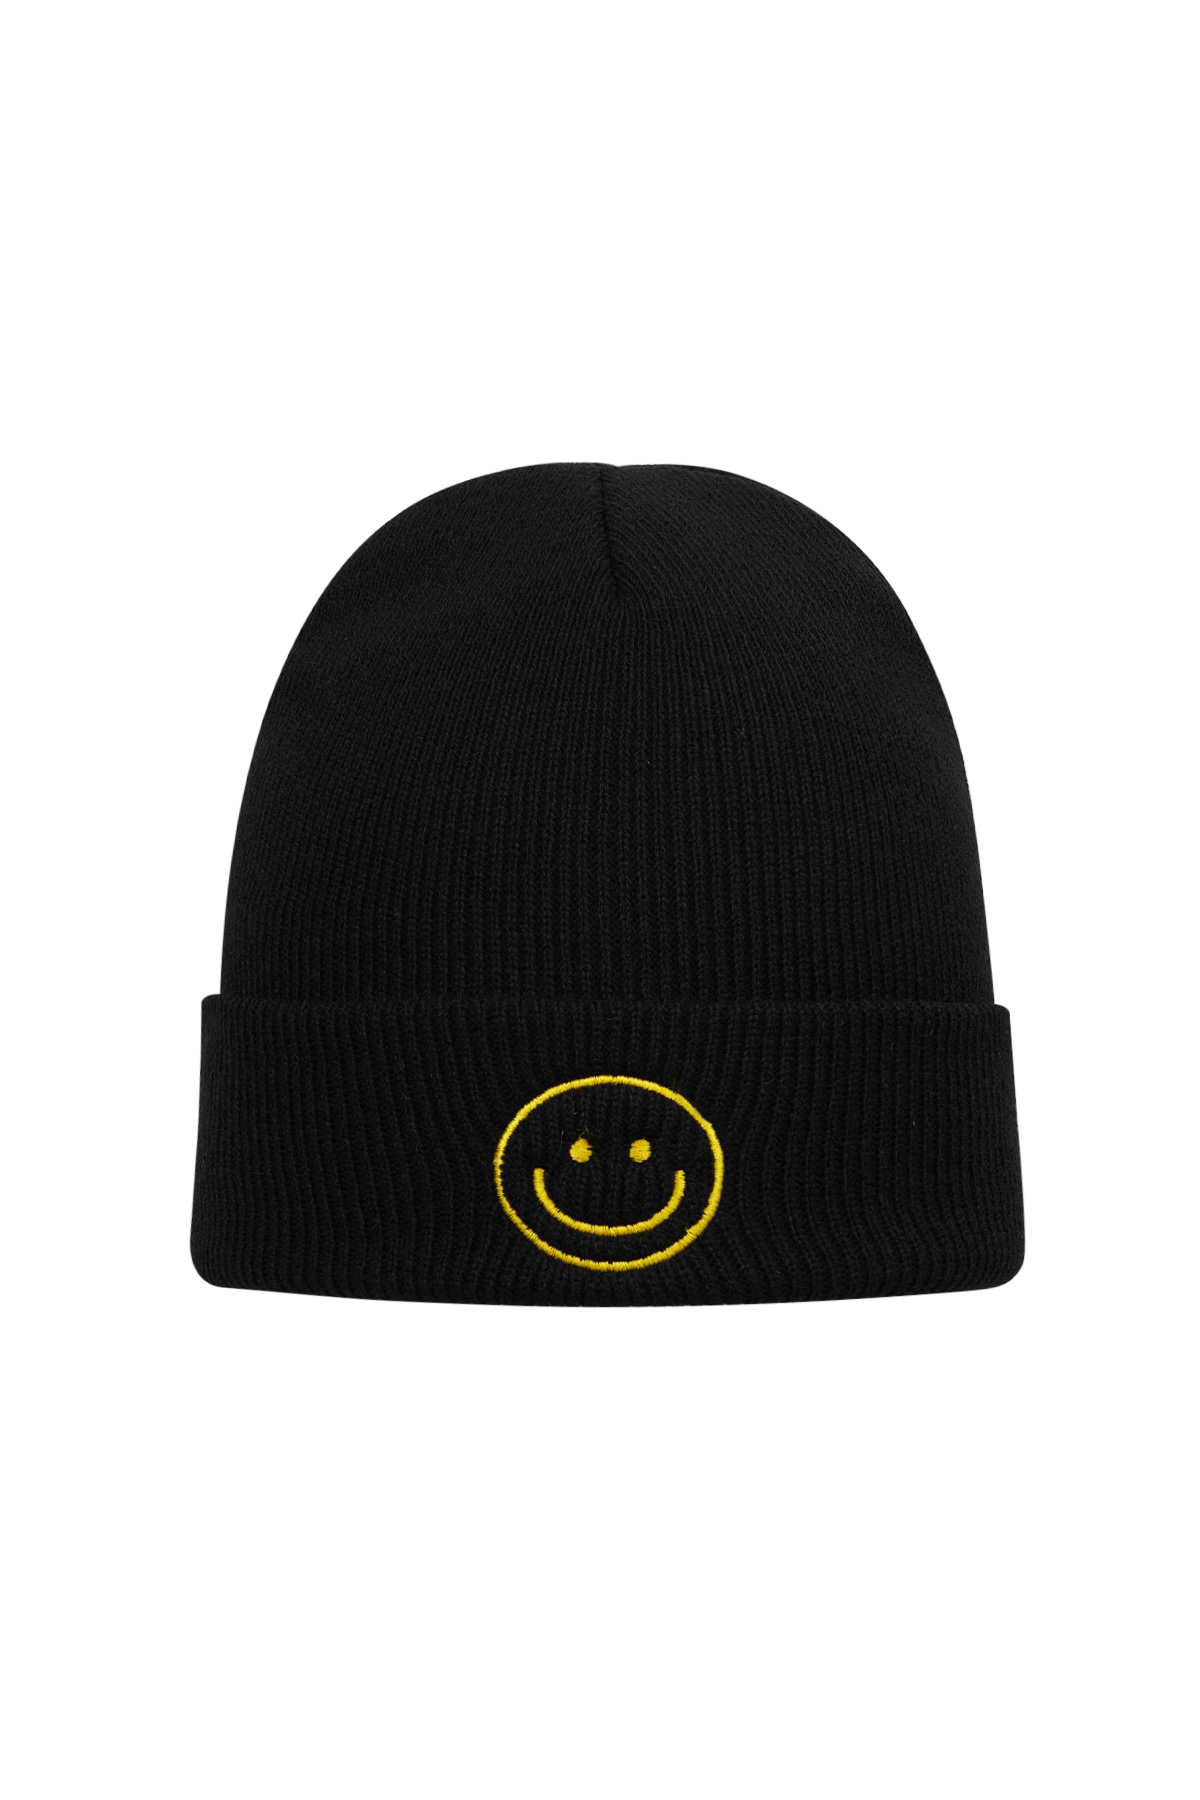 Bunte Mütze mit Smiley – schwarz